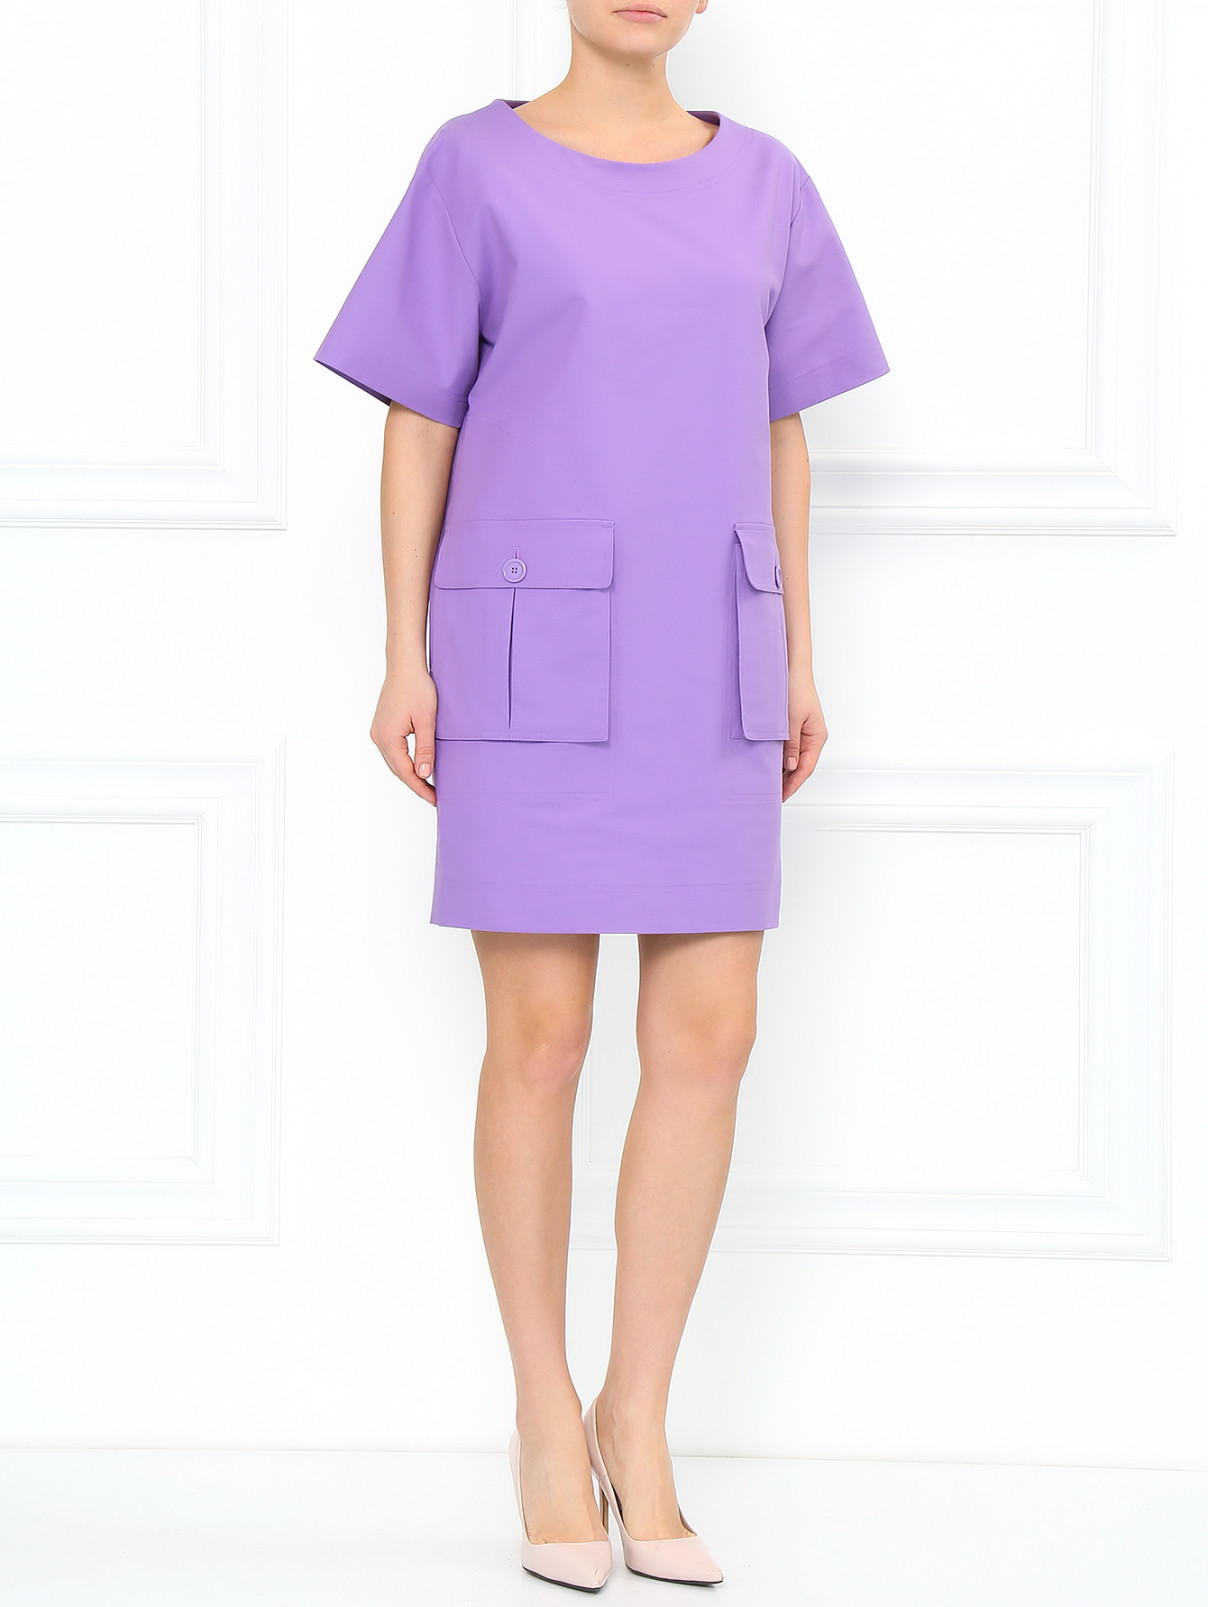 Платье из хлопка свободного фасона с карманами Moschino  –  Модель Общий вид  – Цвет:  Фиолетовый